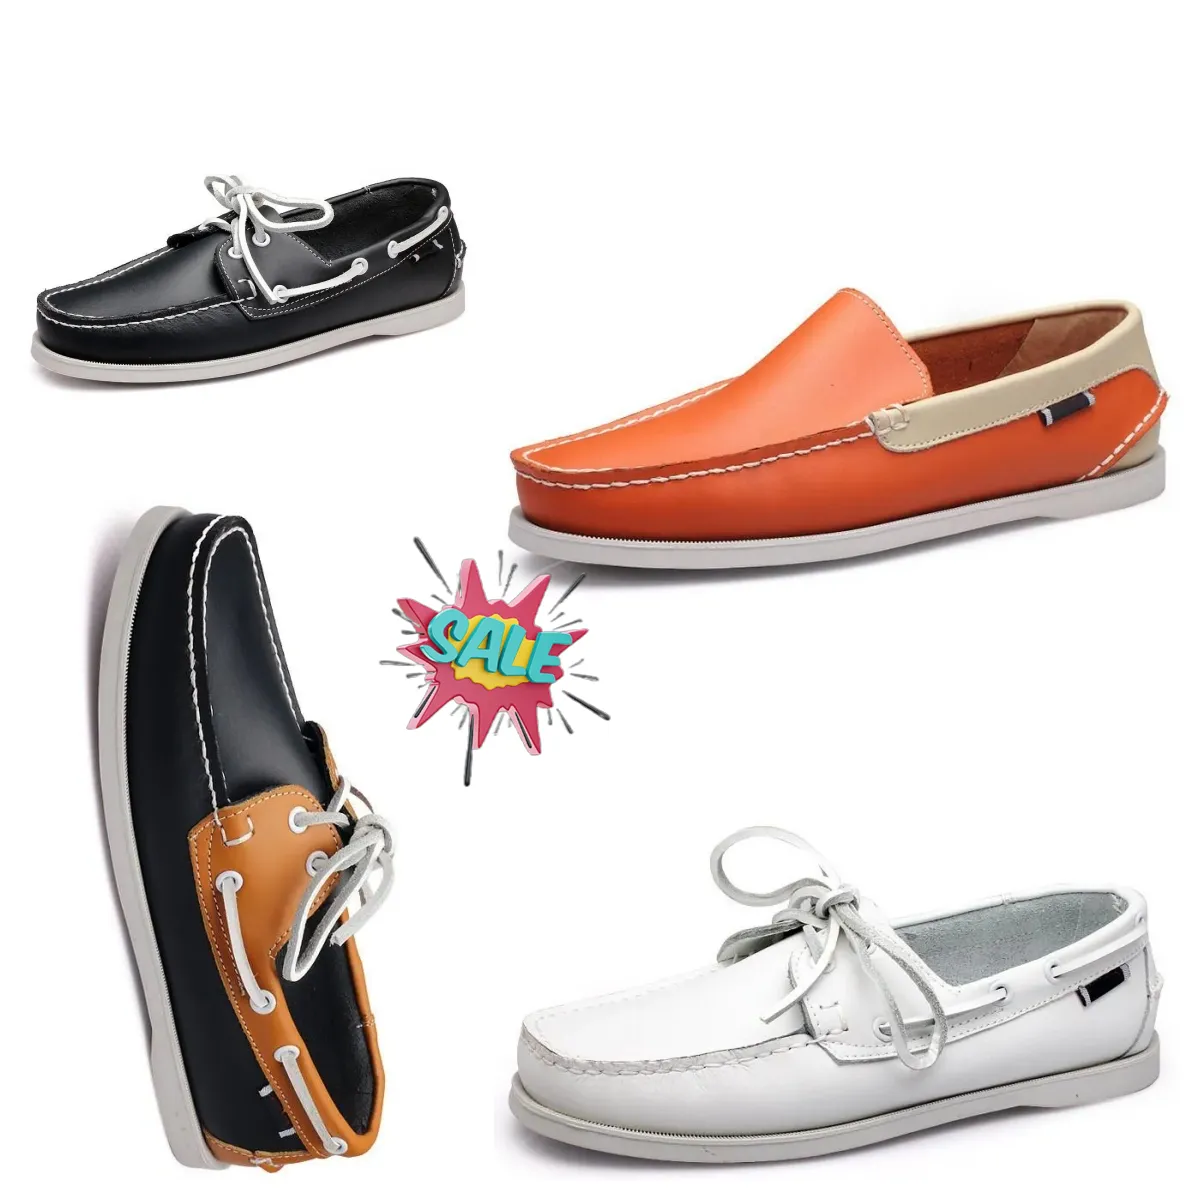 Новые моды Различные стили доступны мужские туфли плавающие обувь кавалевая обувь кожаные дизайнерские кроссовки тренеры Gai 38-45